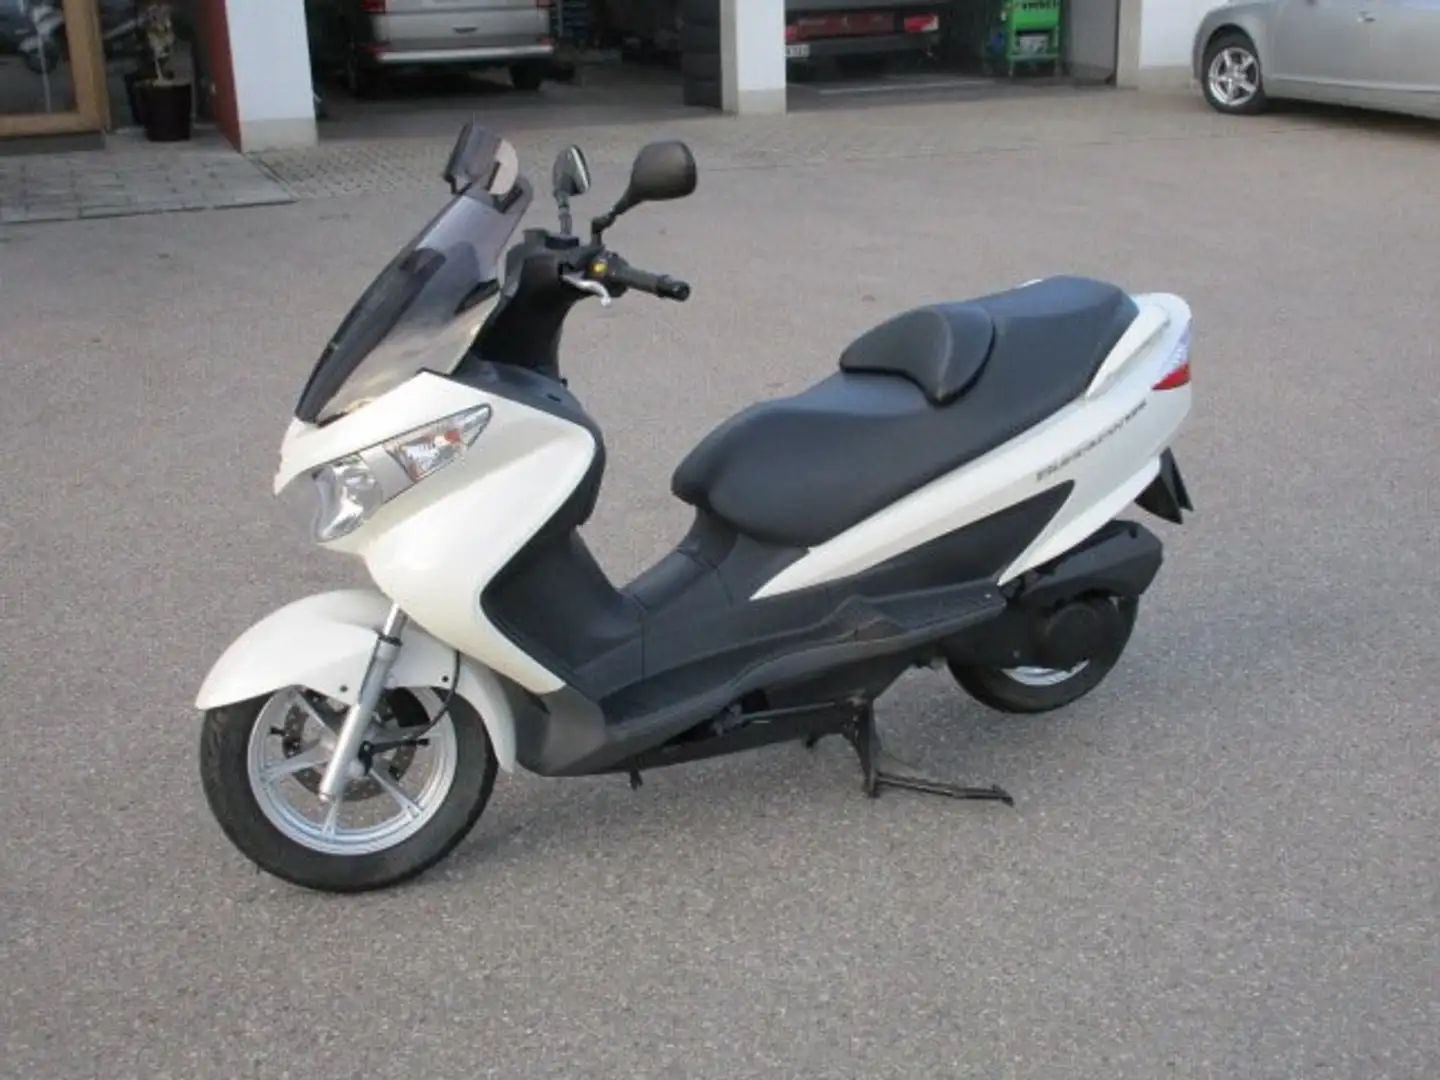 Suzuki Burgman 125 Roller/Scooter in Weiß gebraucht in Tittmoning für €  2.990,-